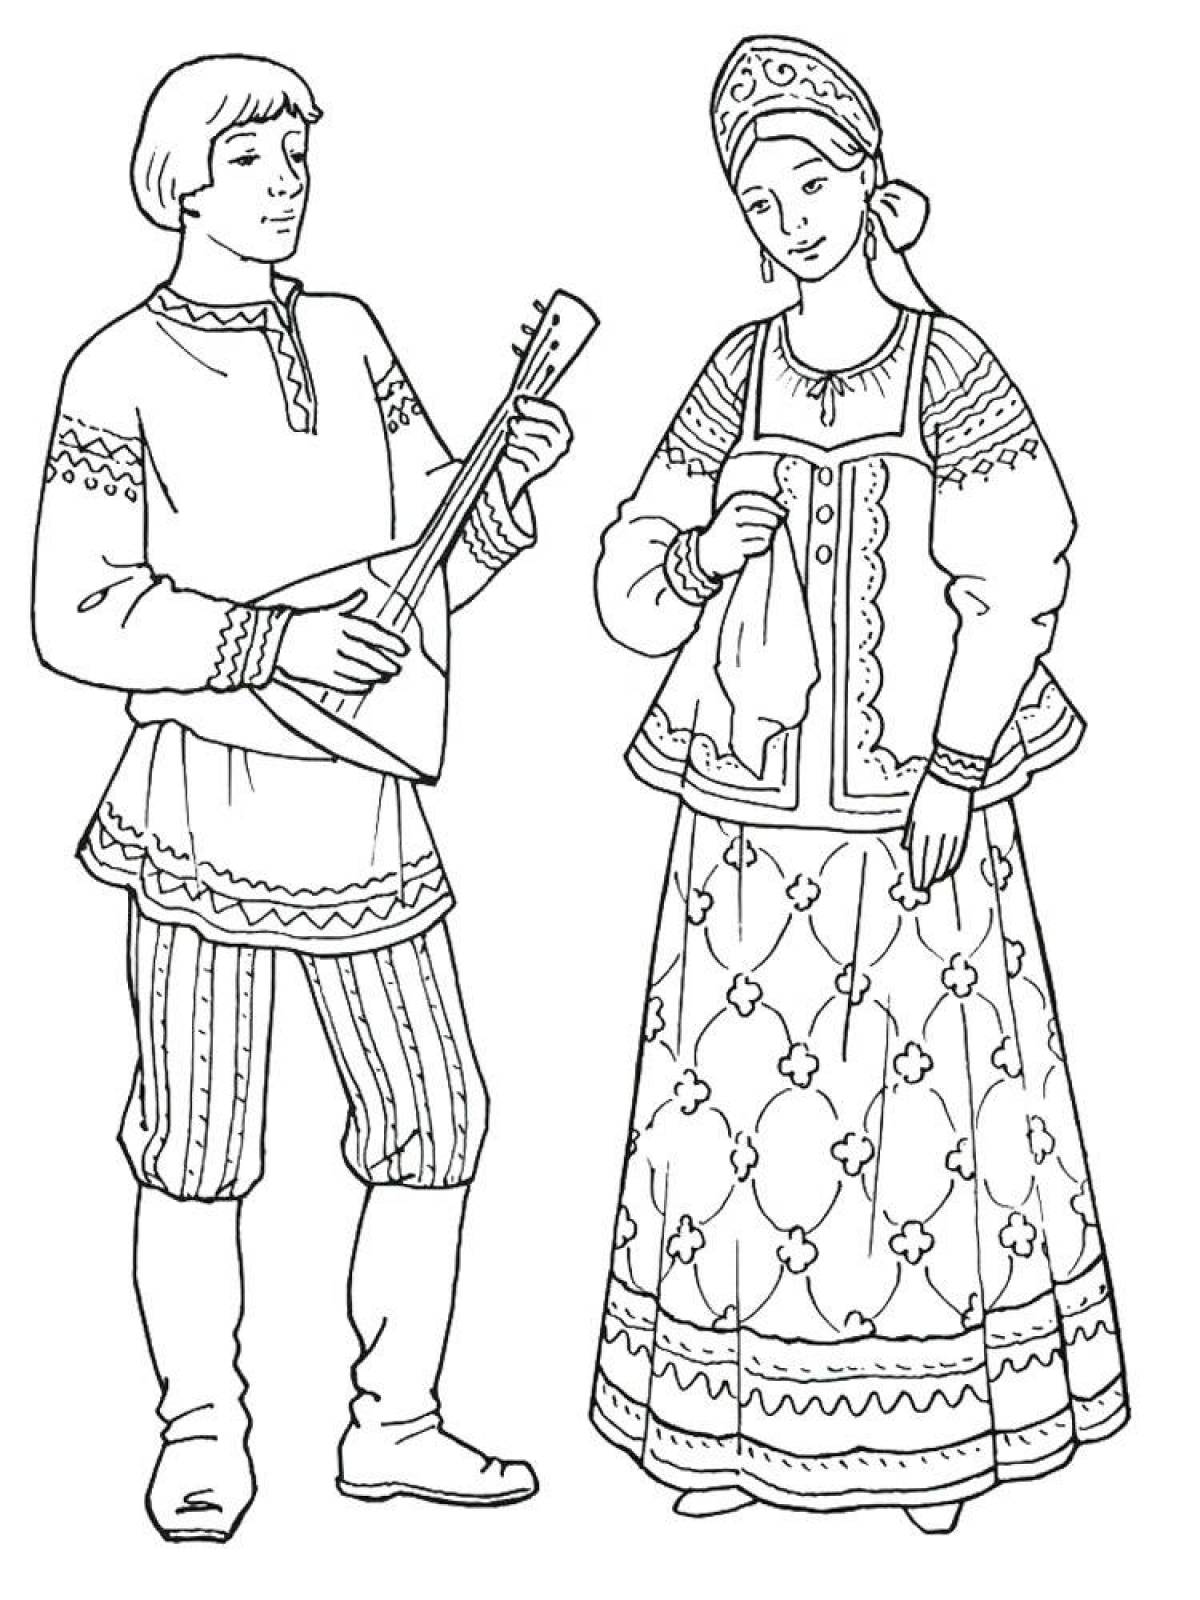 Иллюстрации народных костюмов